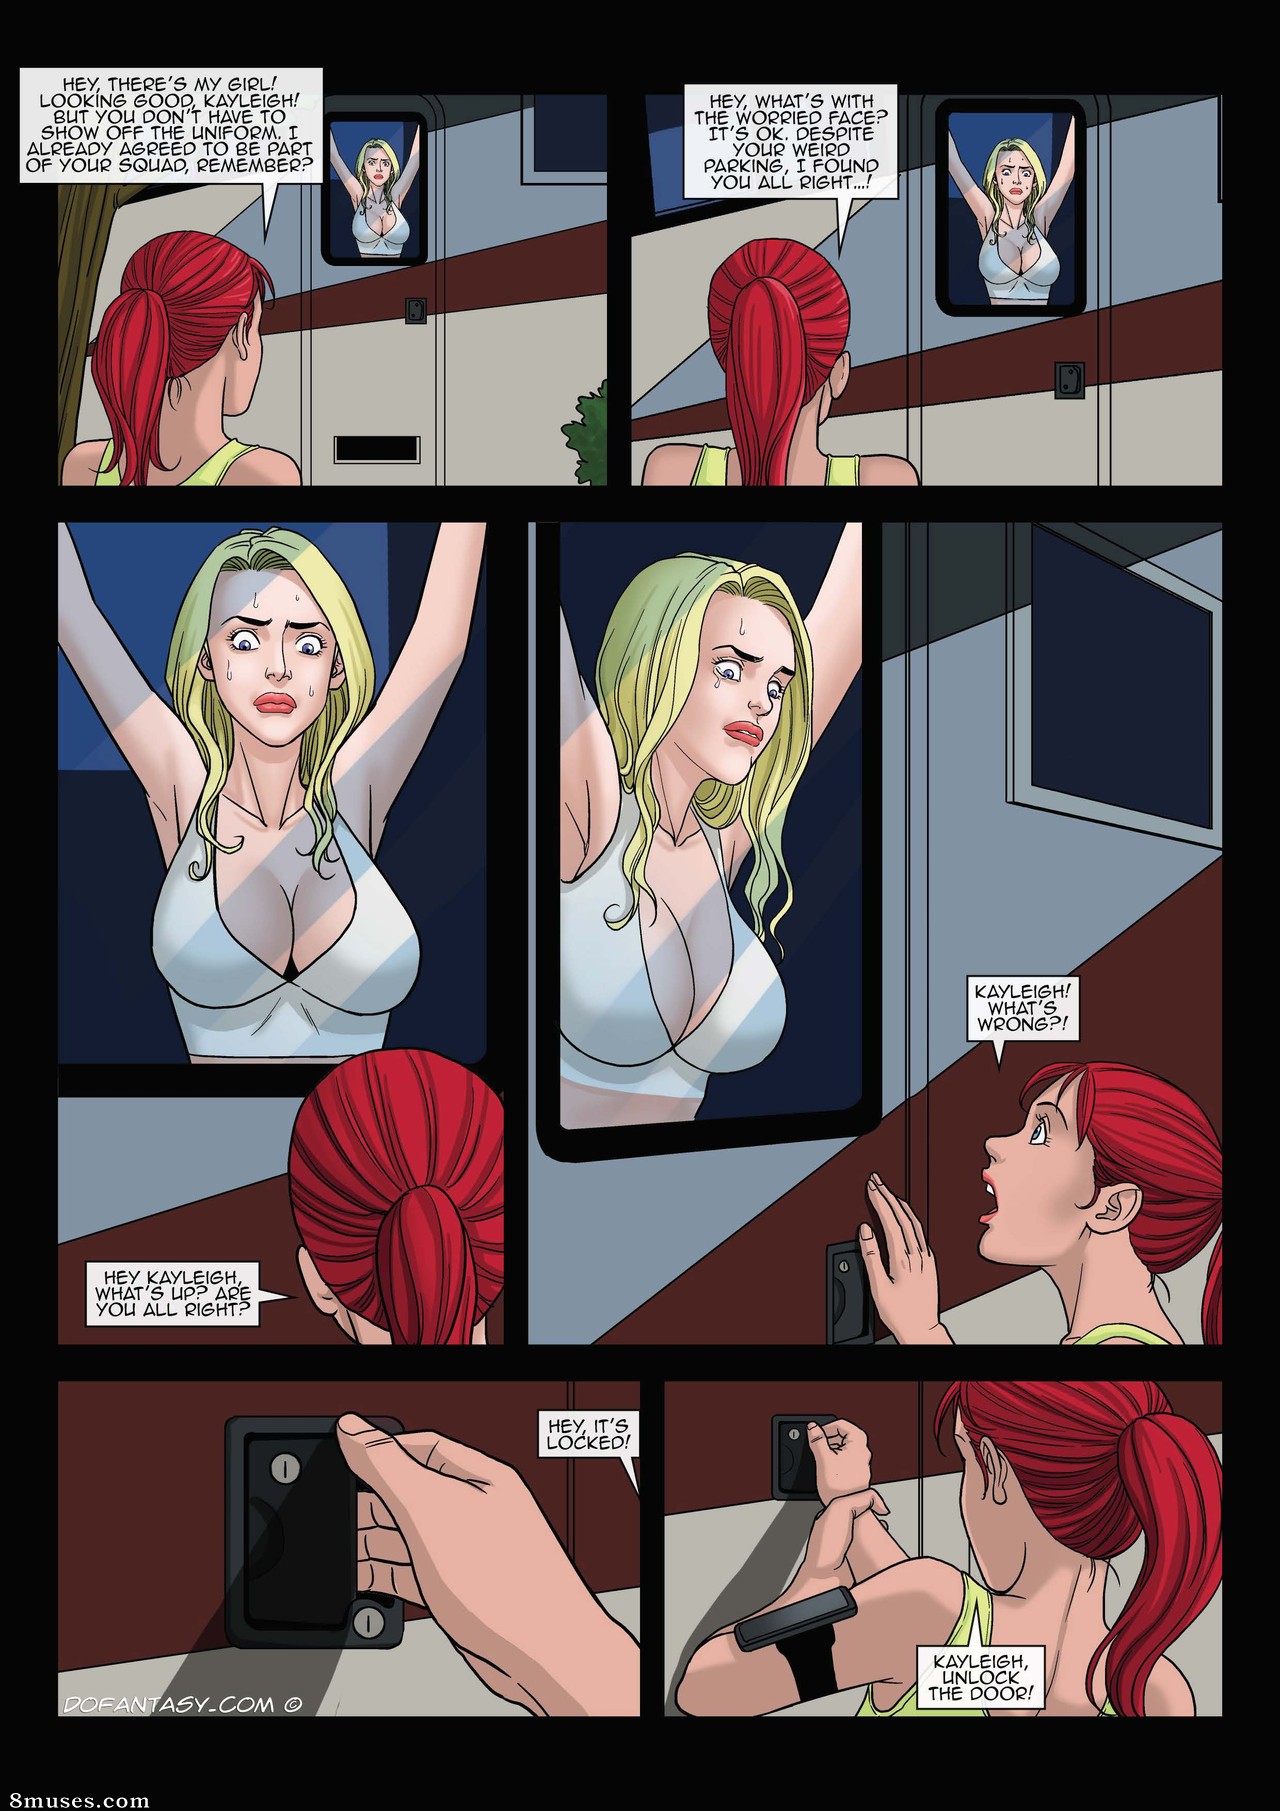 Page 13 Fansadox-Comics/501-600/Fansadox-590-Porn-Porn-Prisoners-Arieta 8muses picture picture